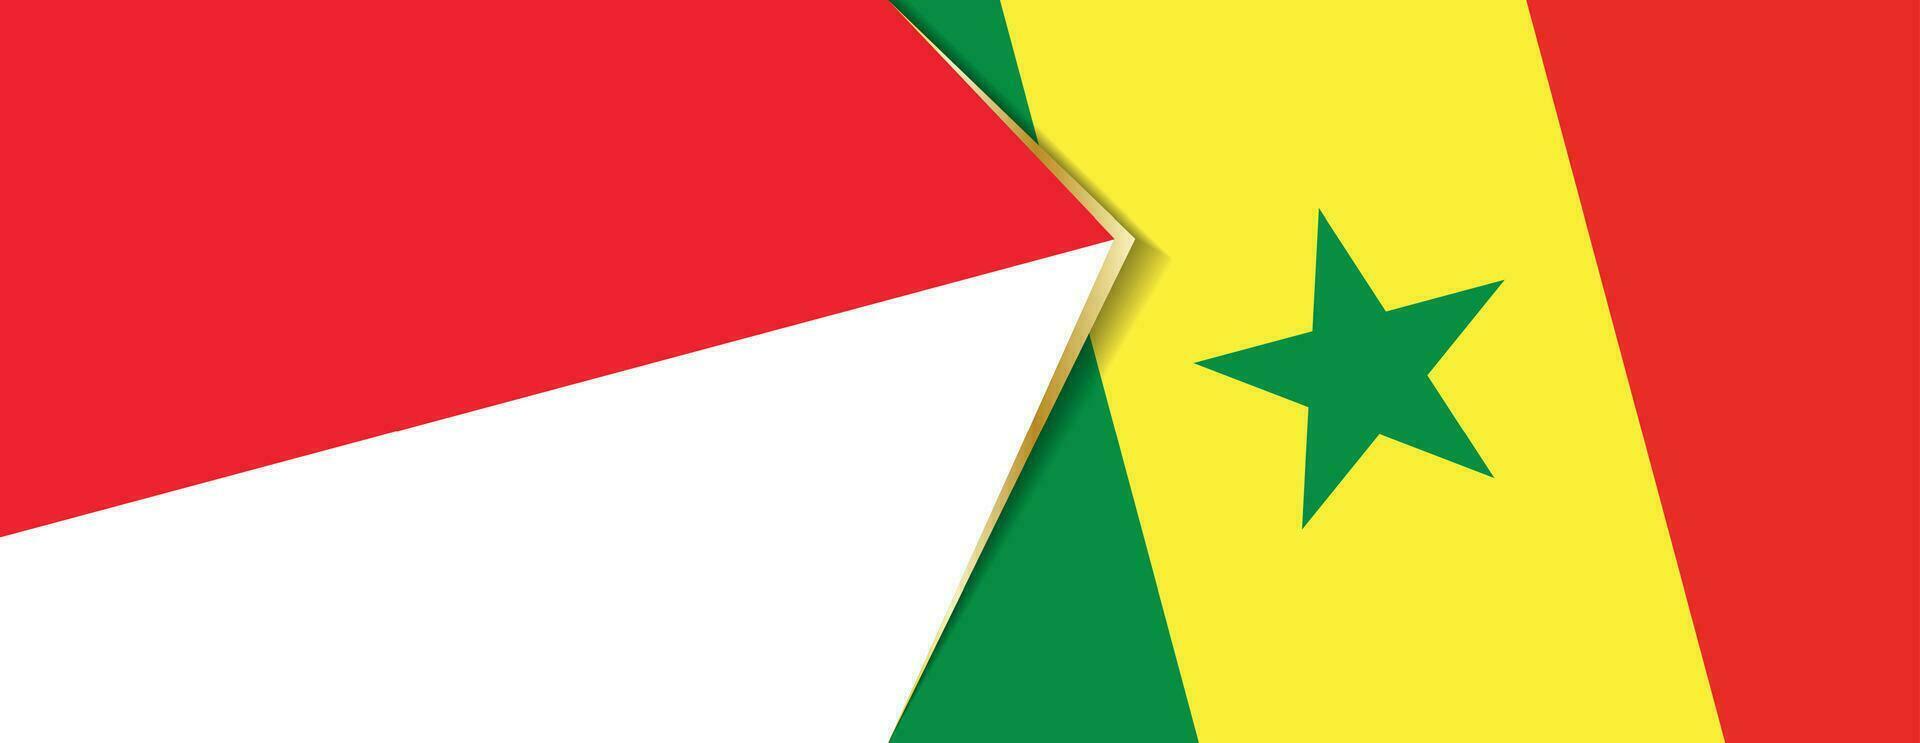 Indonesia e Senegal bandiere, Due vettore bandiere.